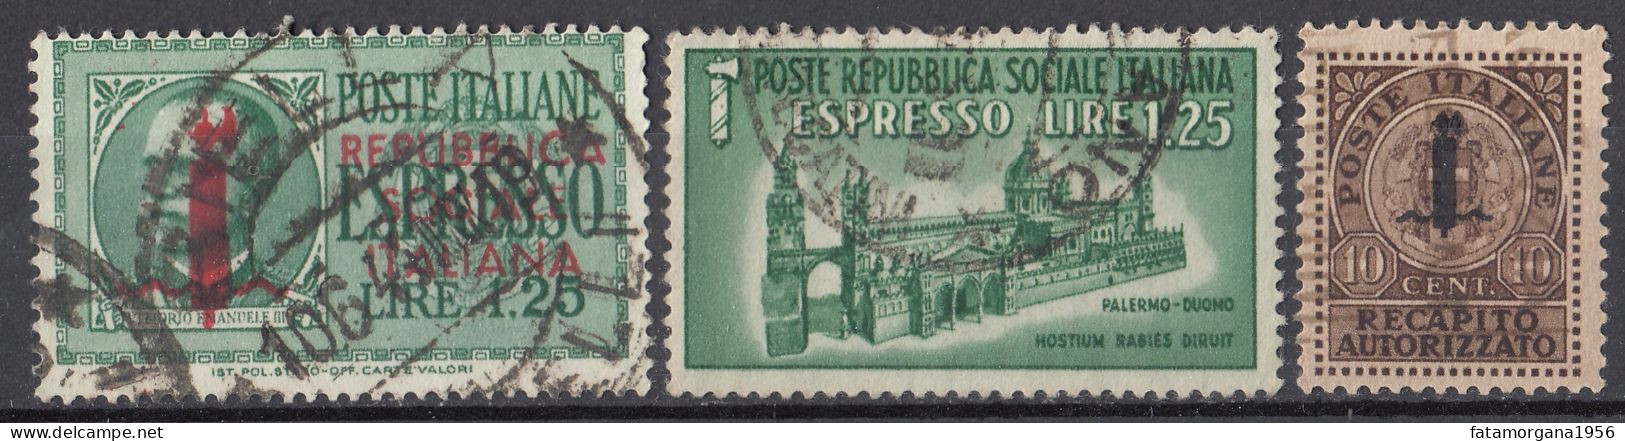 ITALIA, REPUBBLICA SOCIALE - 1944 - Lotto Di 3 Di Francobolli Per Espresso/recapito Autorizzato Usati: Yvert 3, 5 E 6. - Correo Urgente